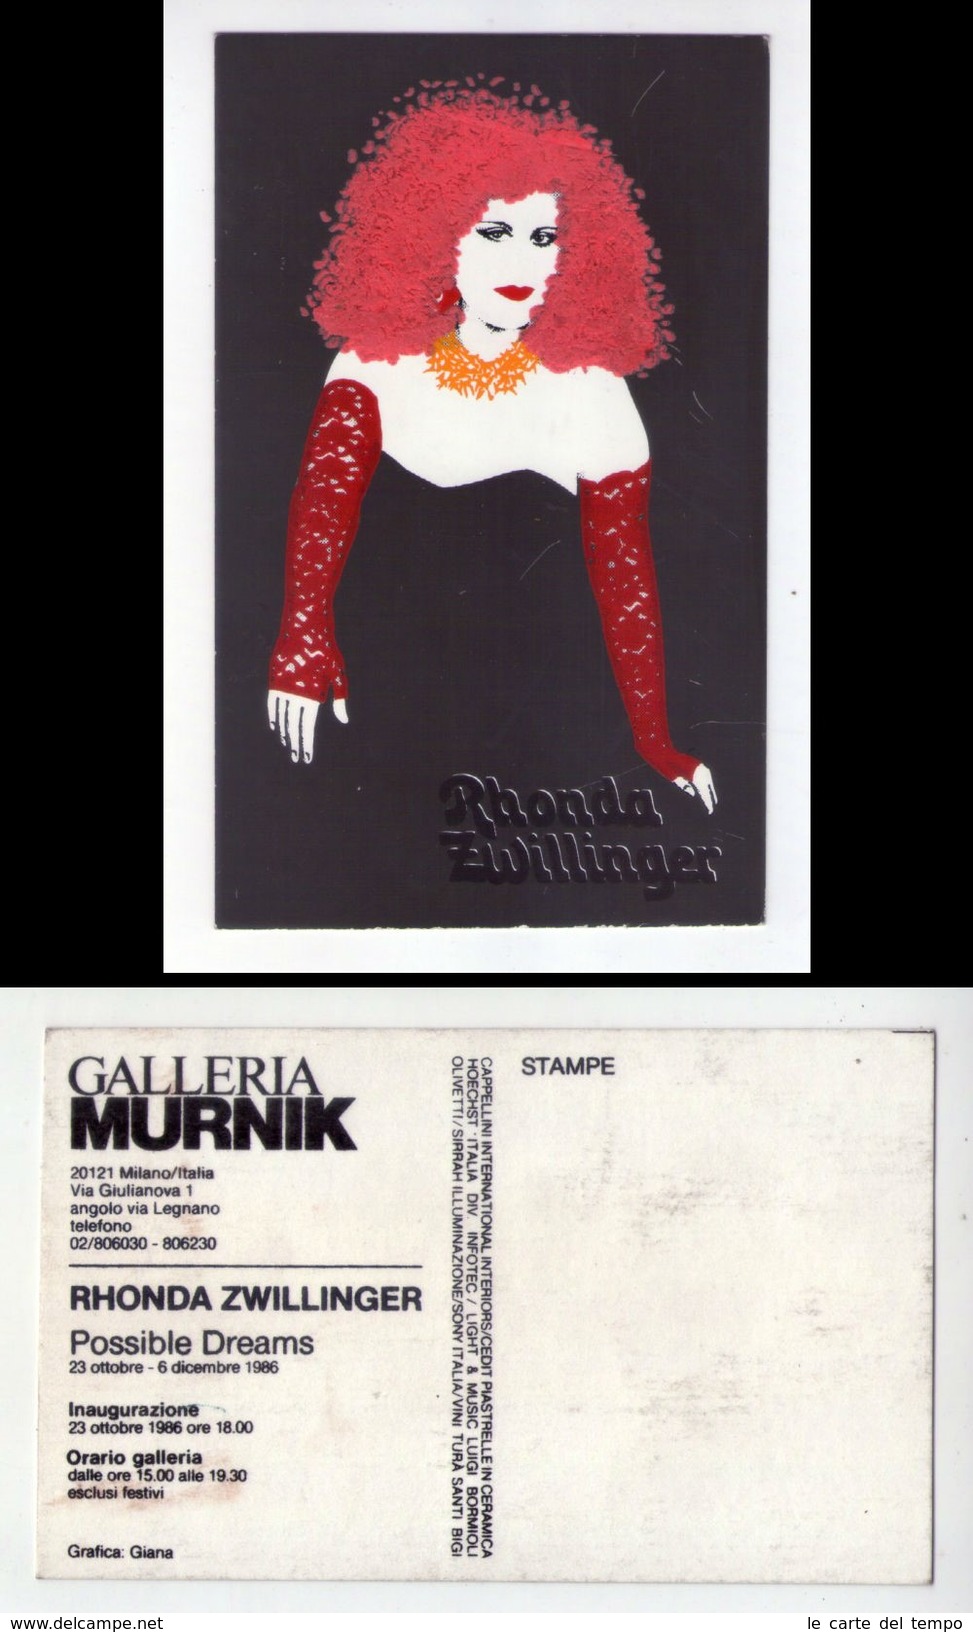 Cartolina Serigrafica Con Applicazioni. RHONDA ZWILLINGER "Possible Dreams" Inaugurazione 1986 - Inaugurations